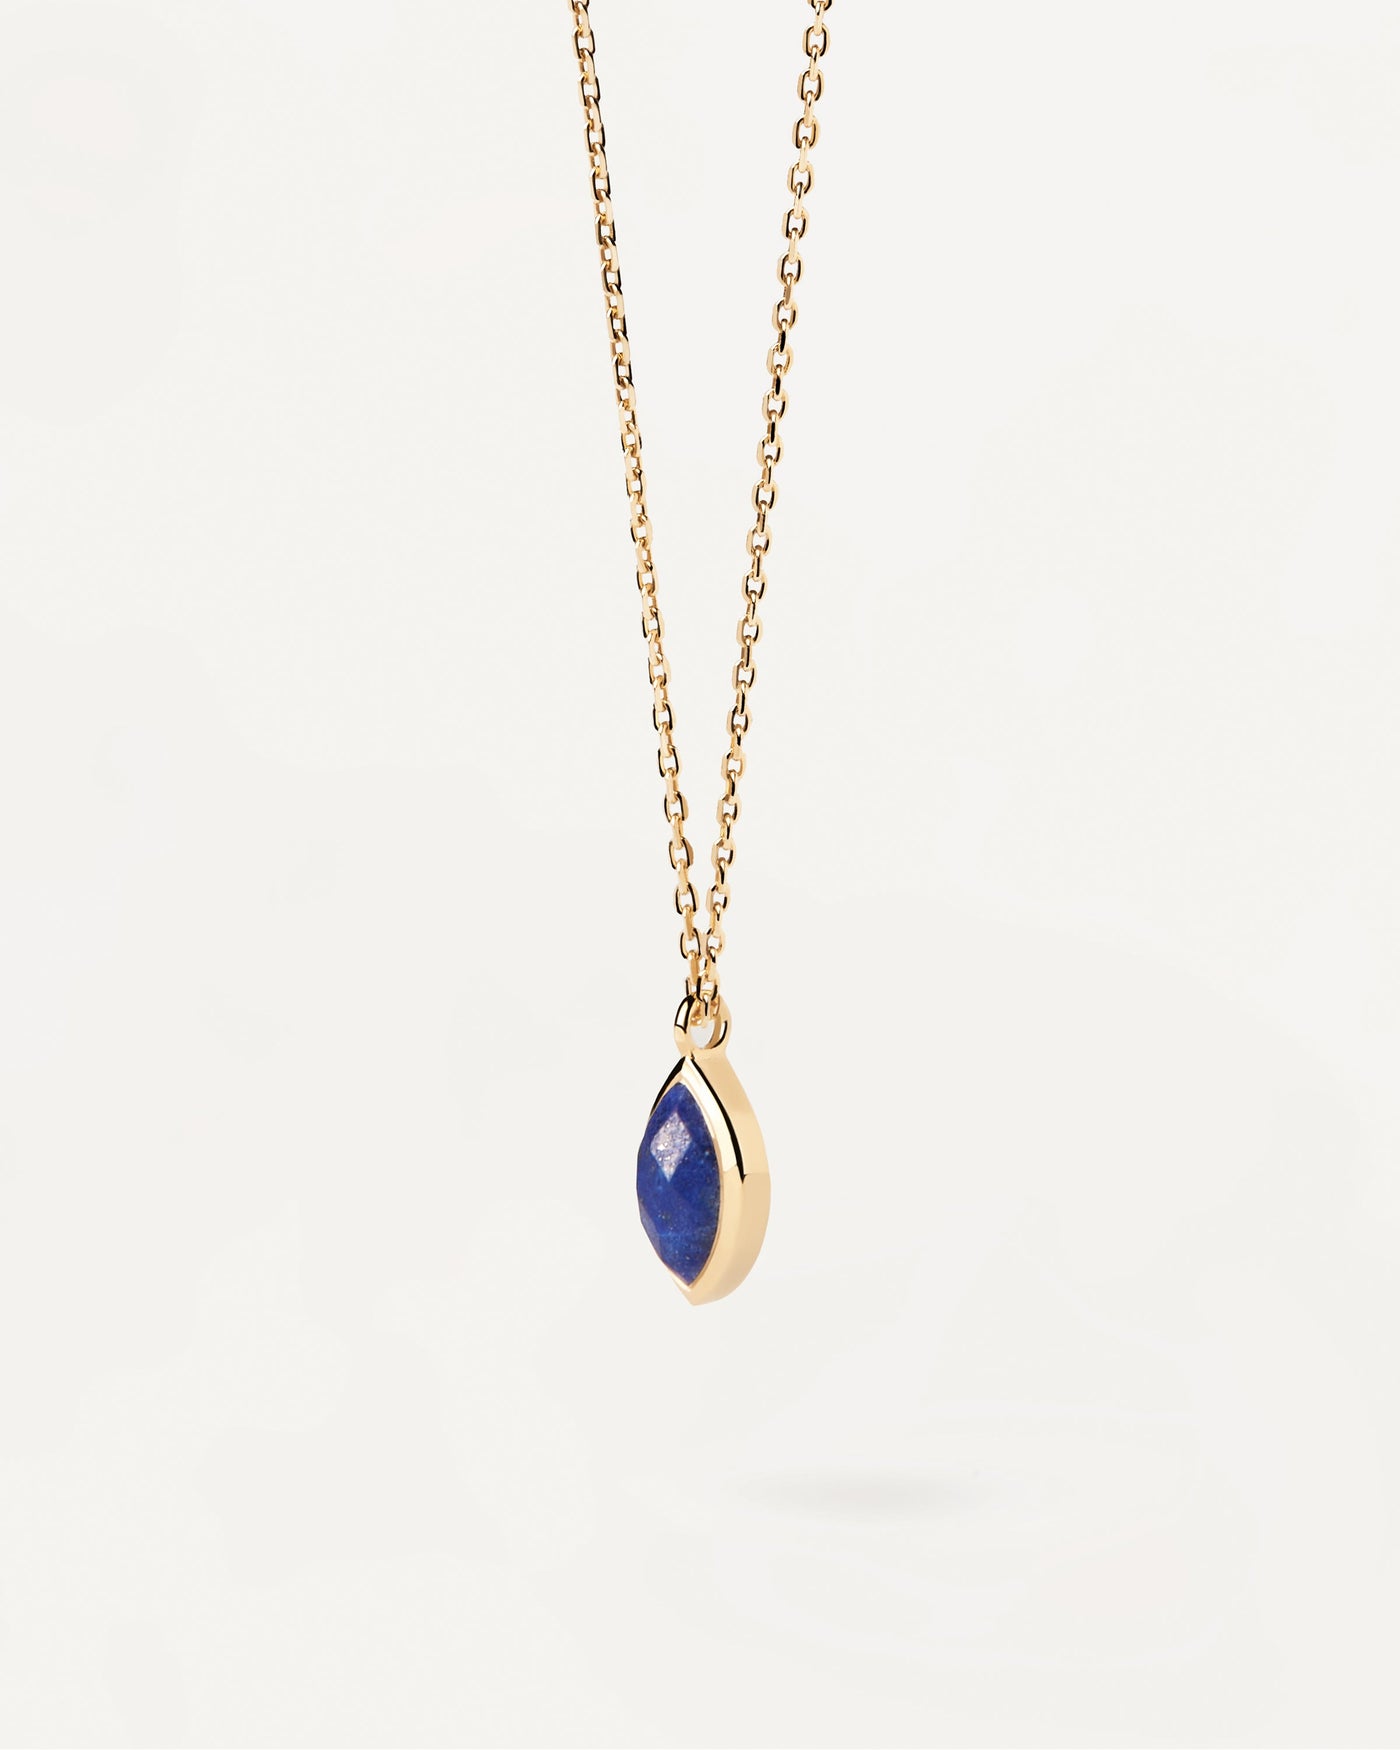 Collier Lapis-Lazuli Nomad. Collier chaîne plaquée or avec un pendentif en pierre fine bleue taillée en marquise. Découvrez les dernières nouveautés de chez PDPAOLA. Commandez et recevez votre bijou en toute sérénité.